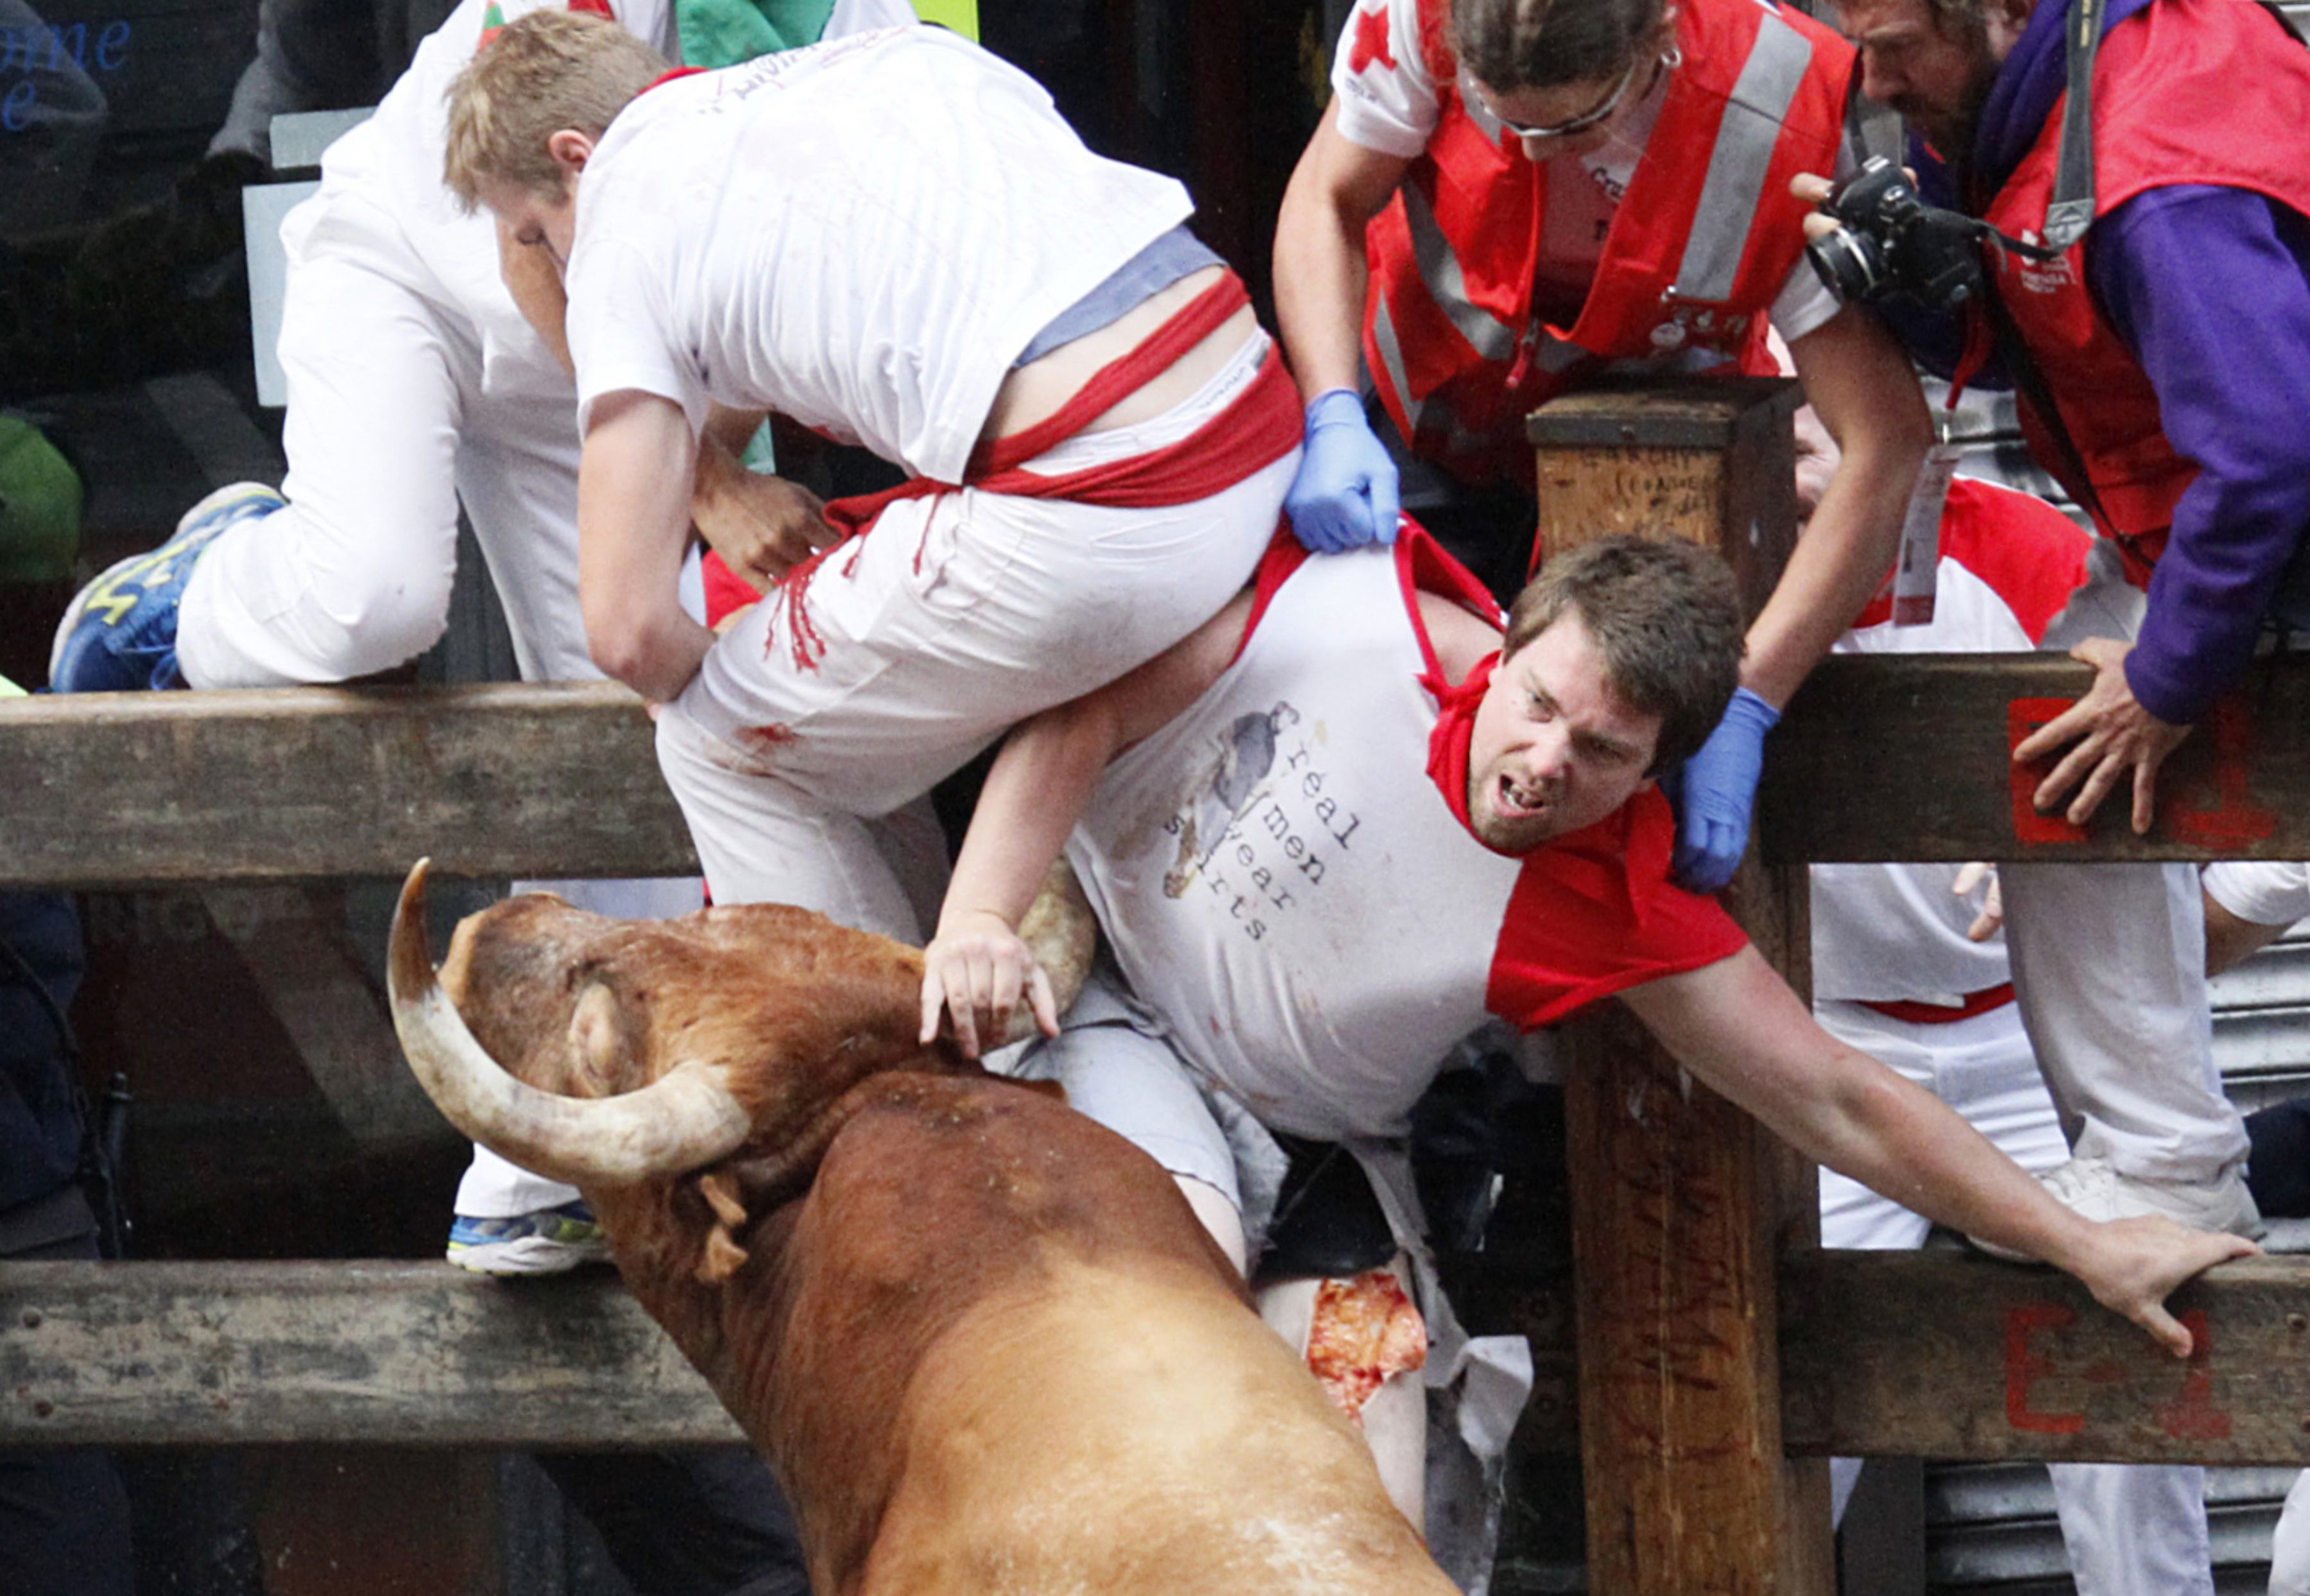 Two Australians gored at Spanish bull run